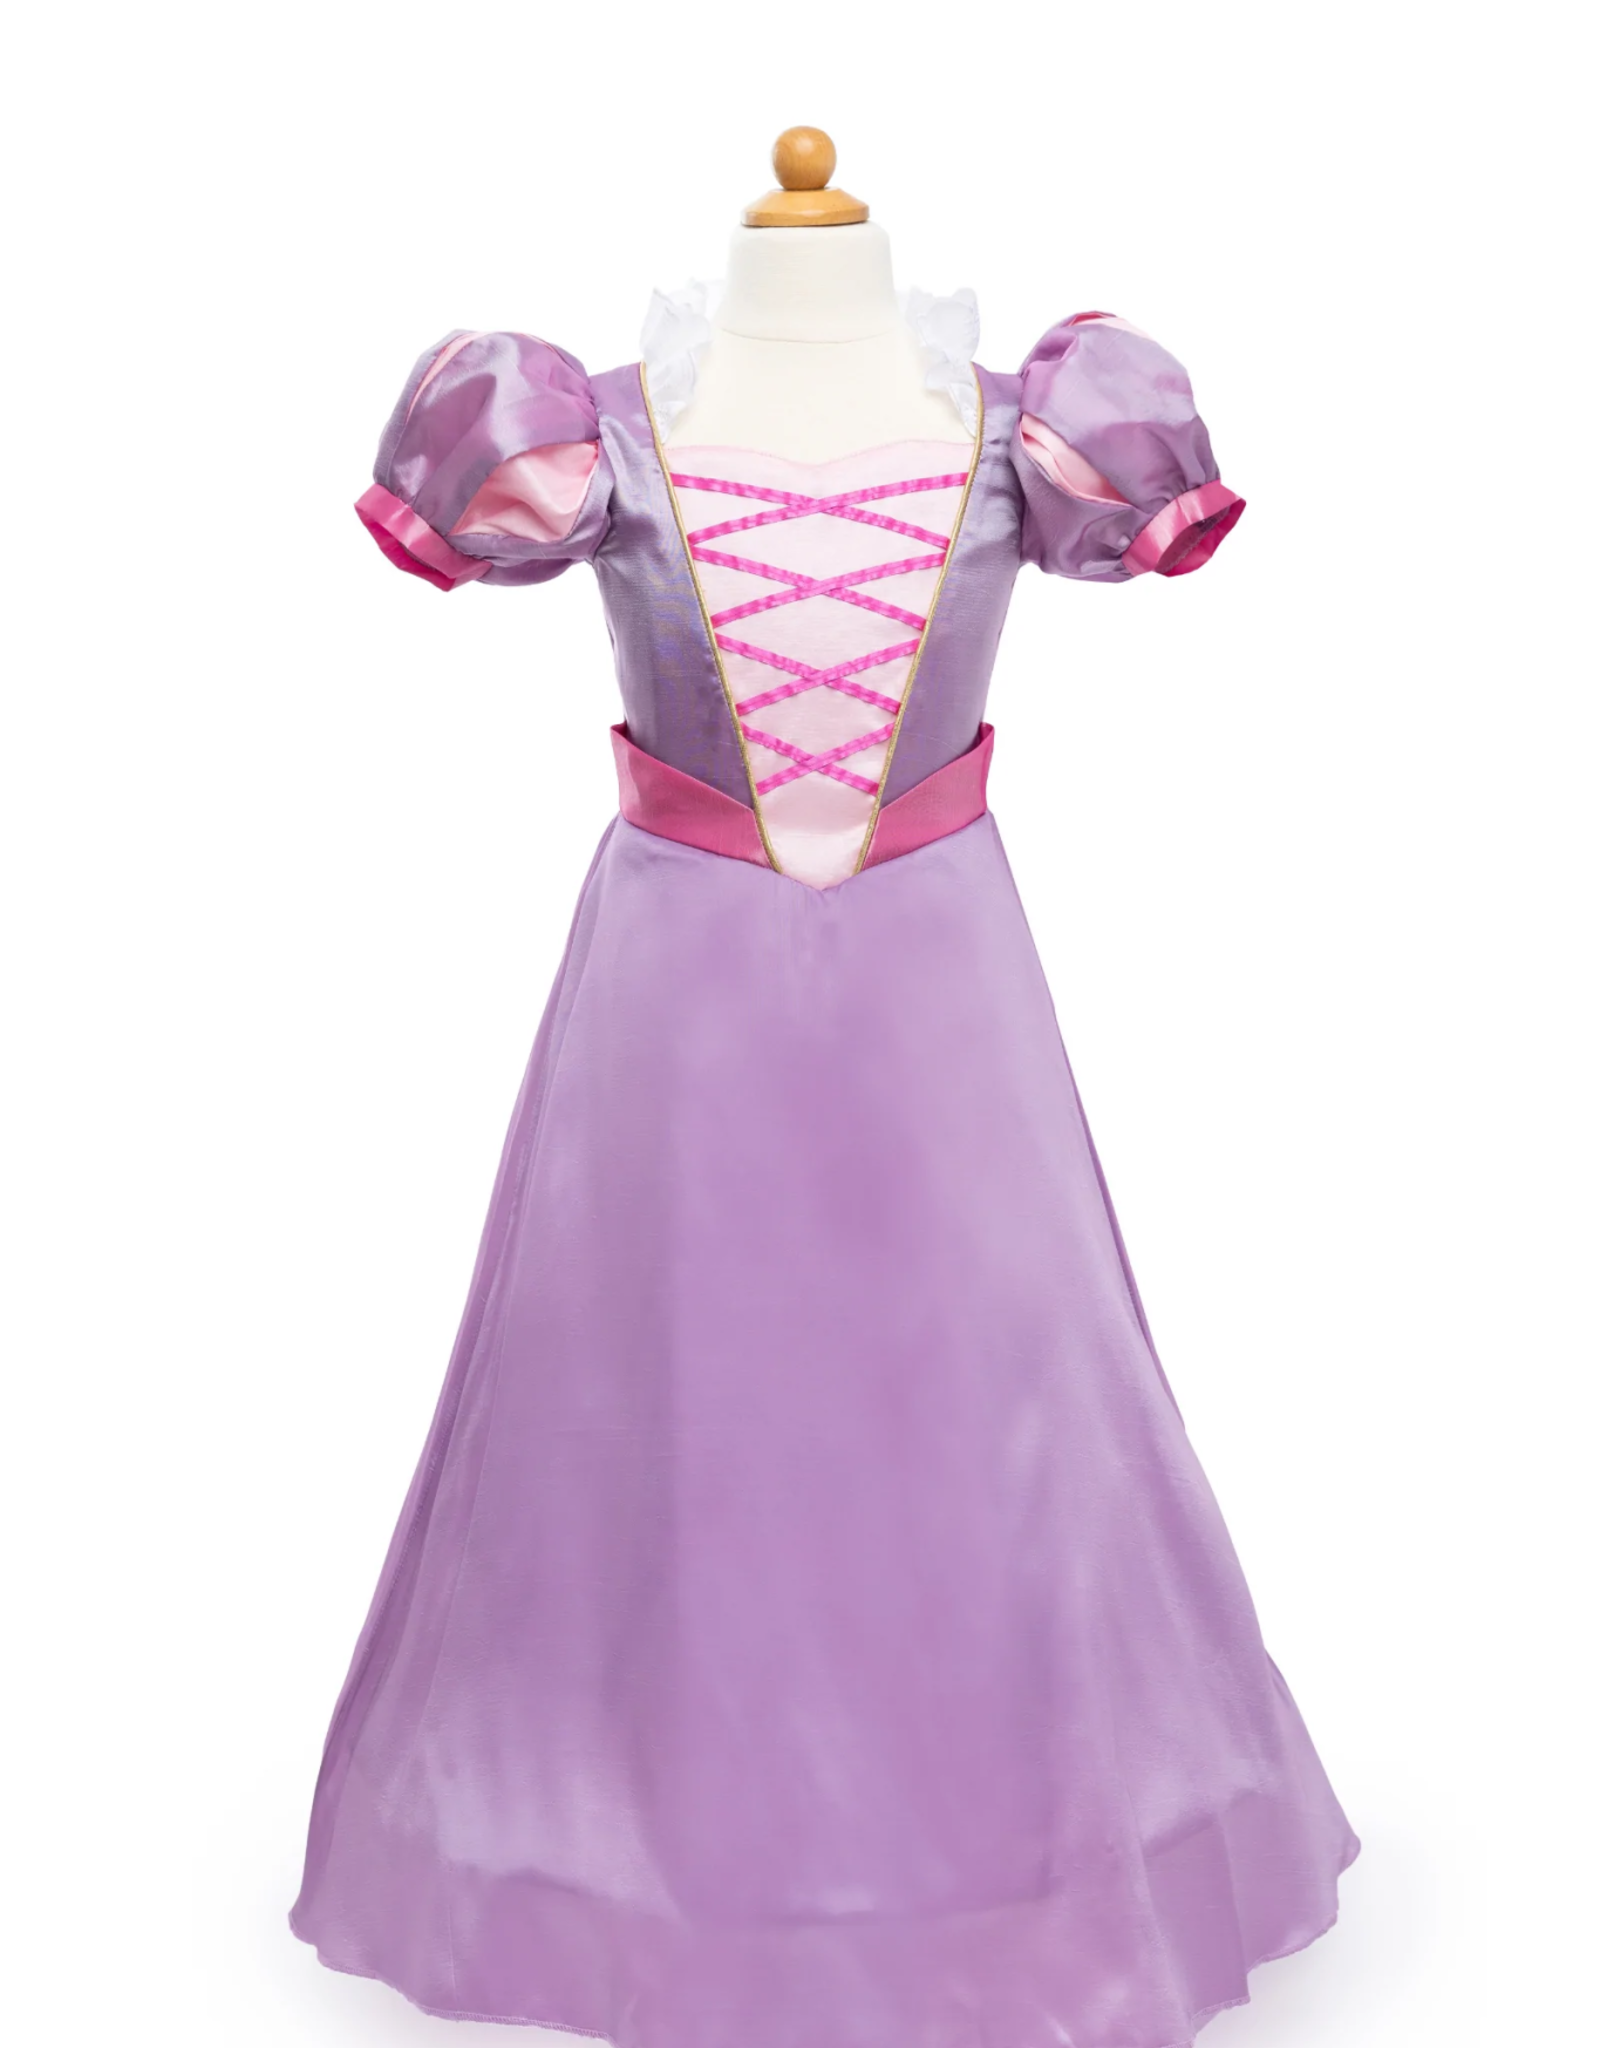 Great Pretenders Boutique Rapunzel Gown, Size 5-6